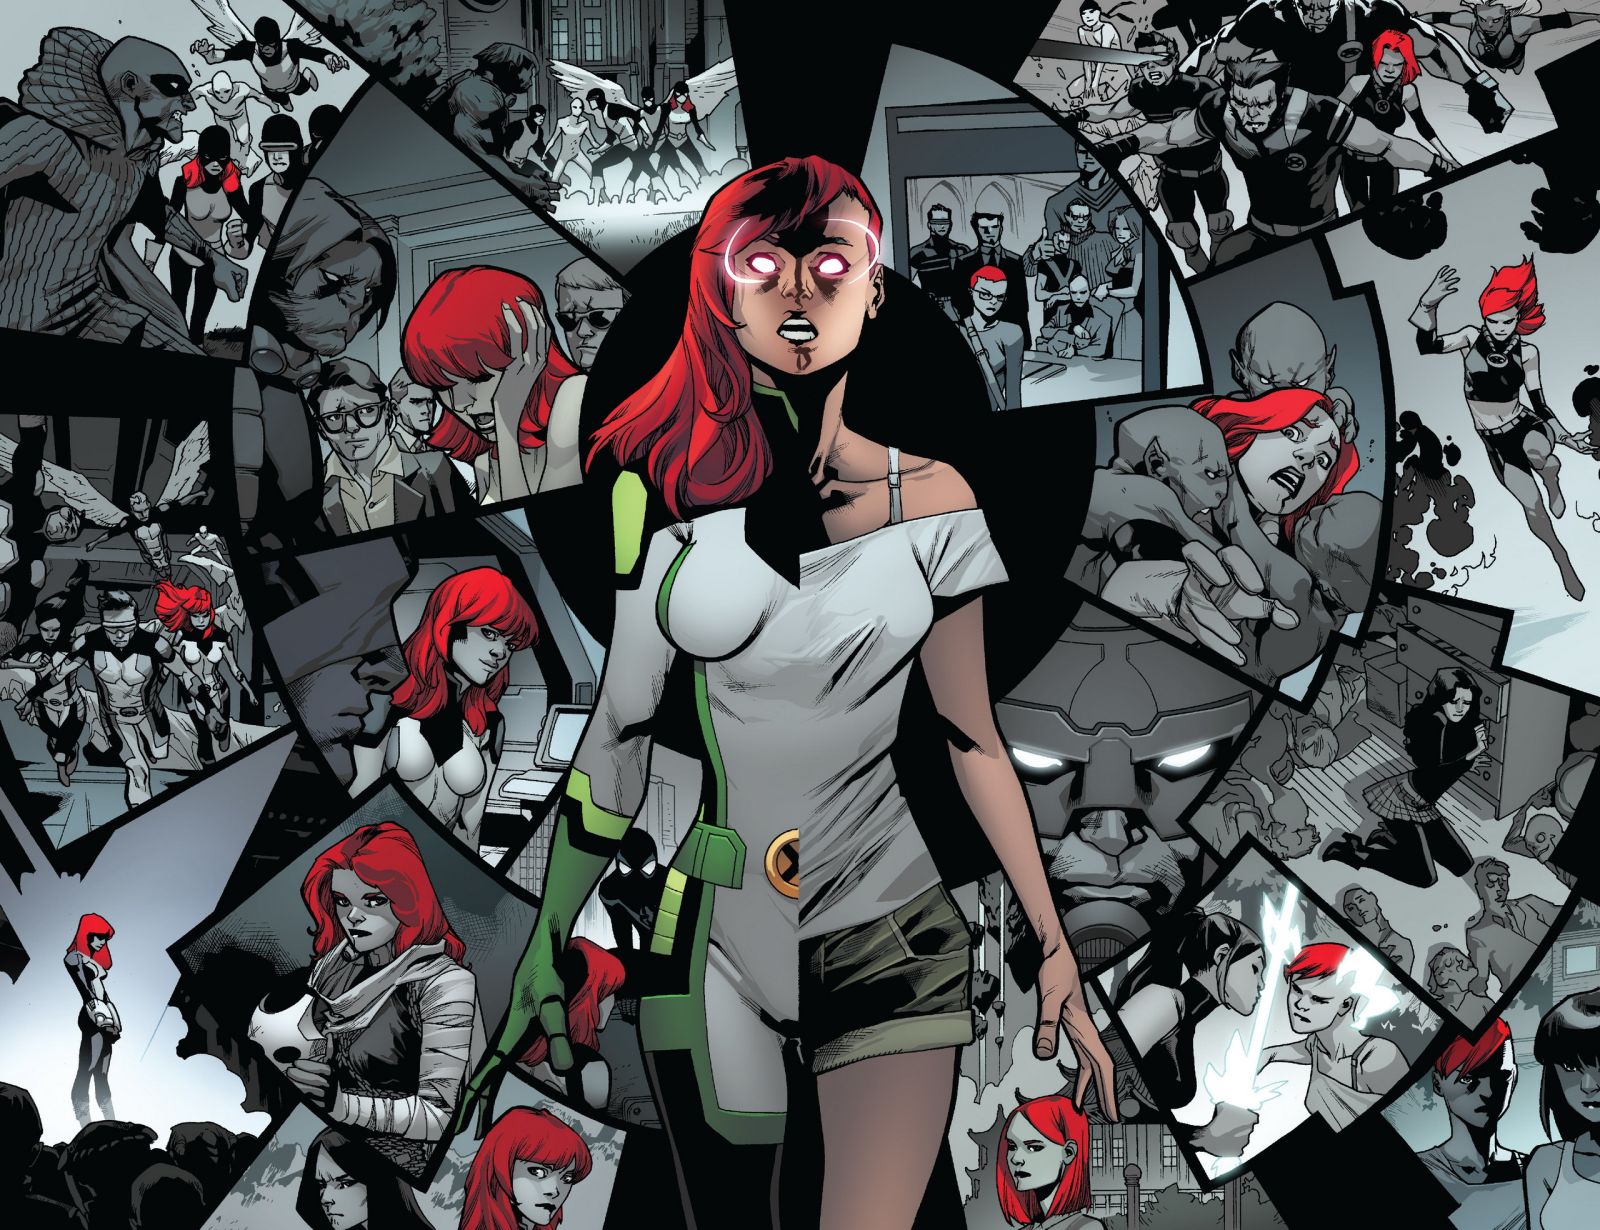 All-New X-Men #34